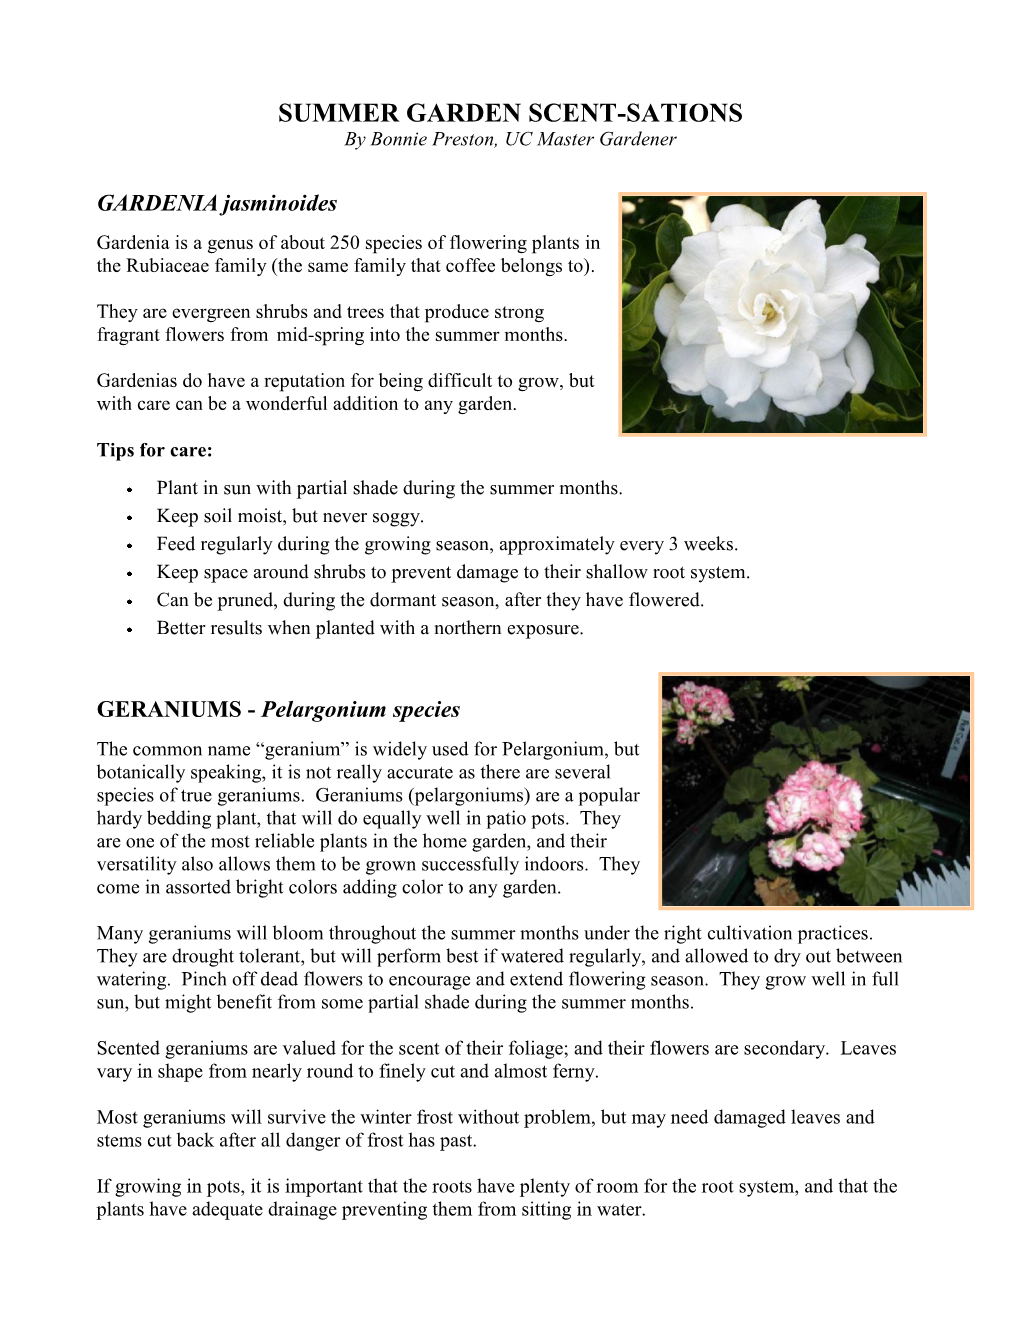 SUMMER GARDEN SCENT-SATIONS by Bonnie Preston, UC Master Gardener